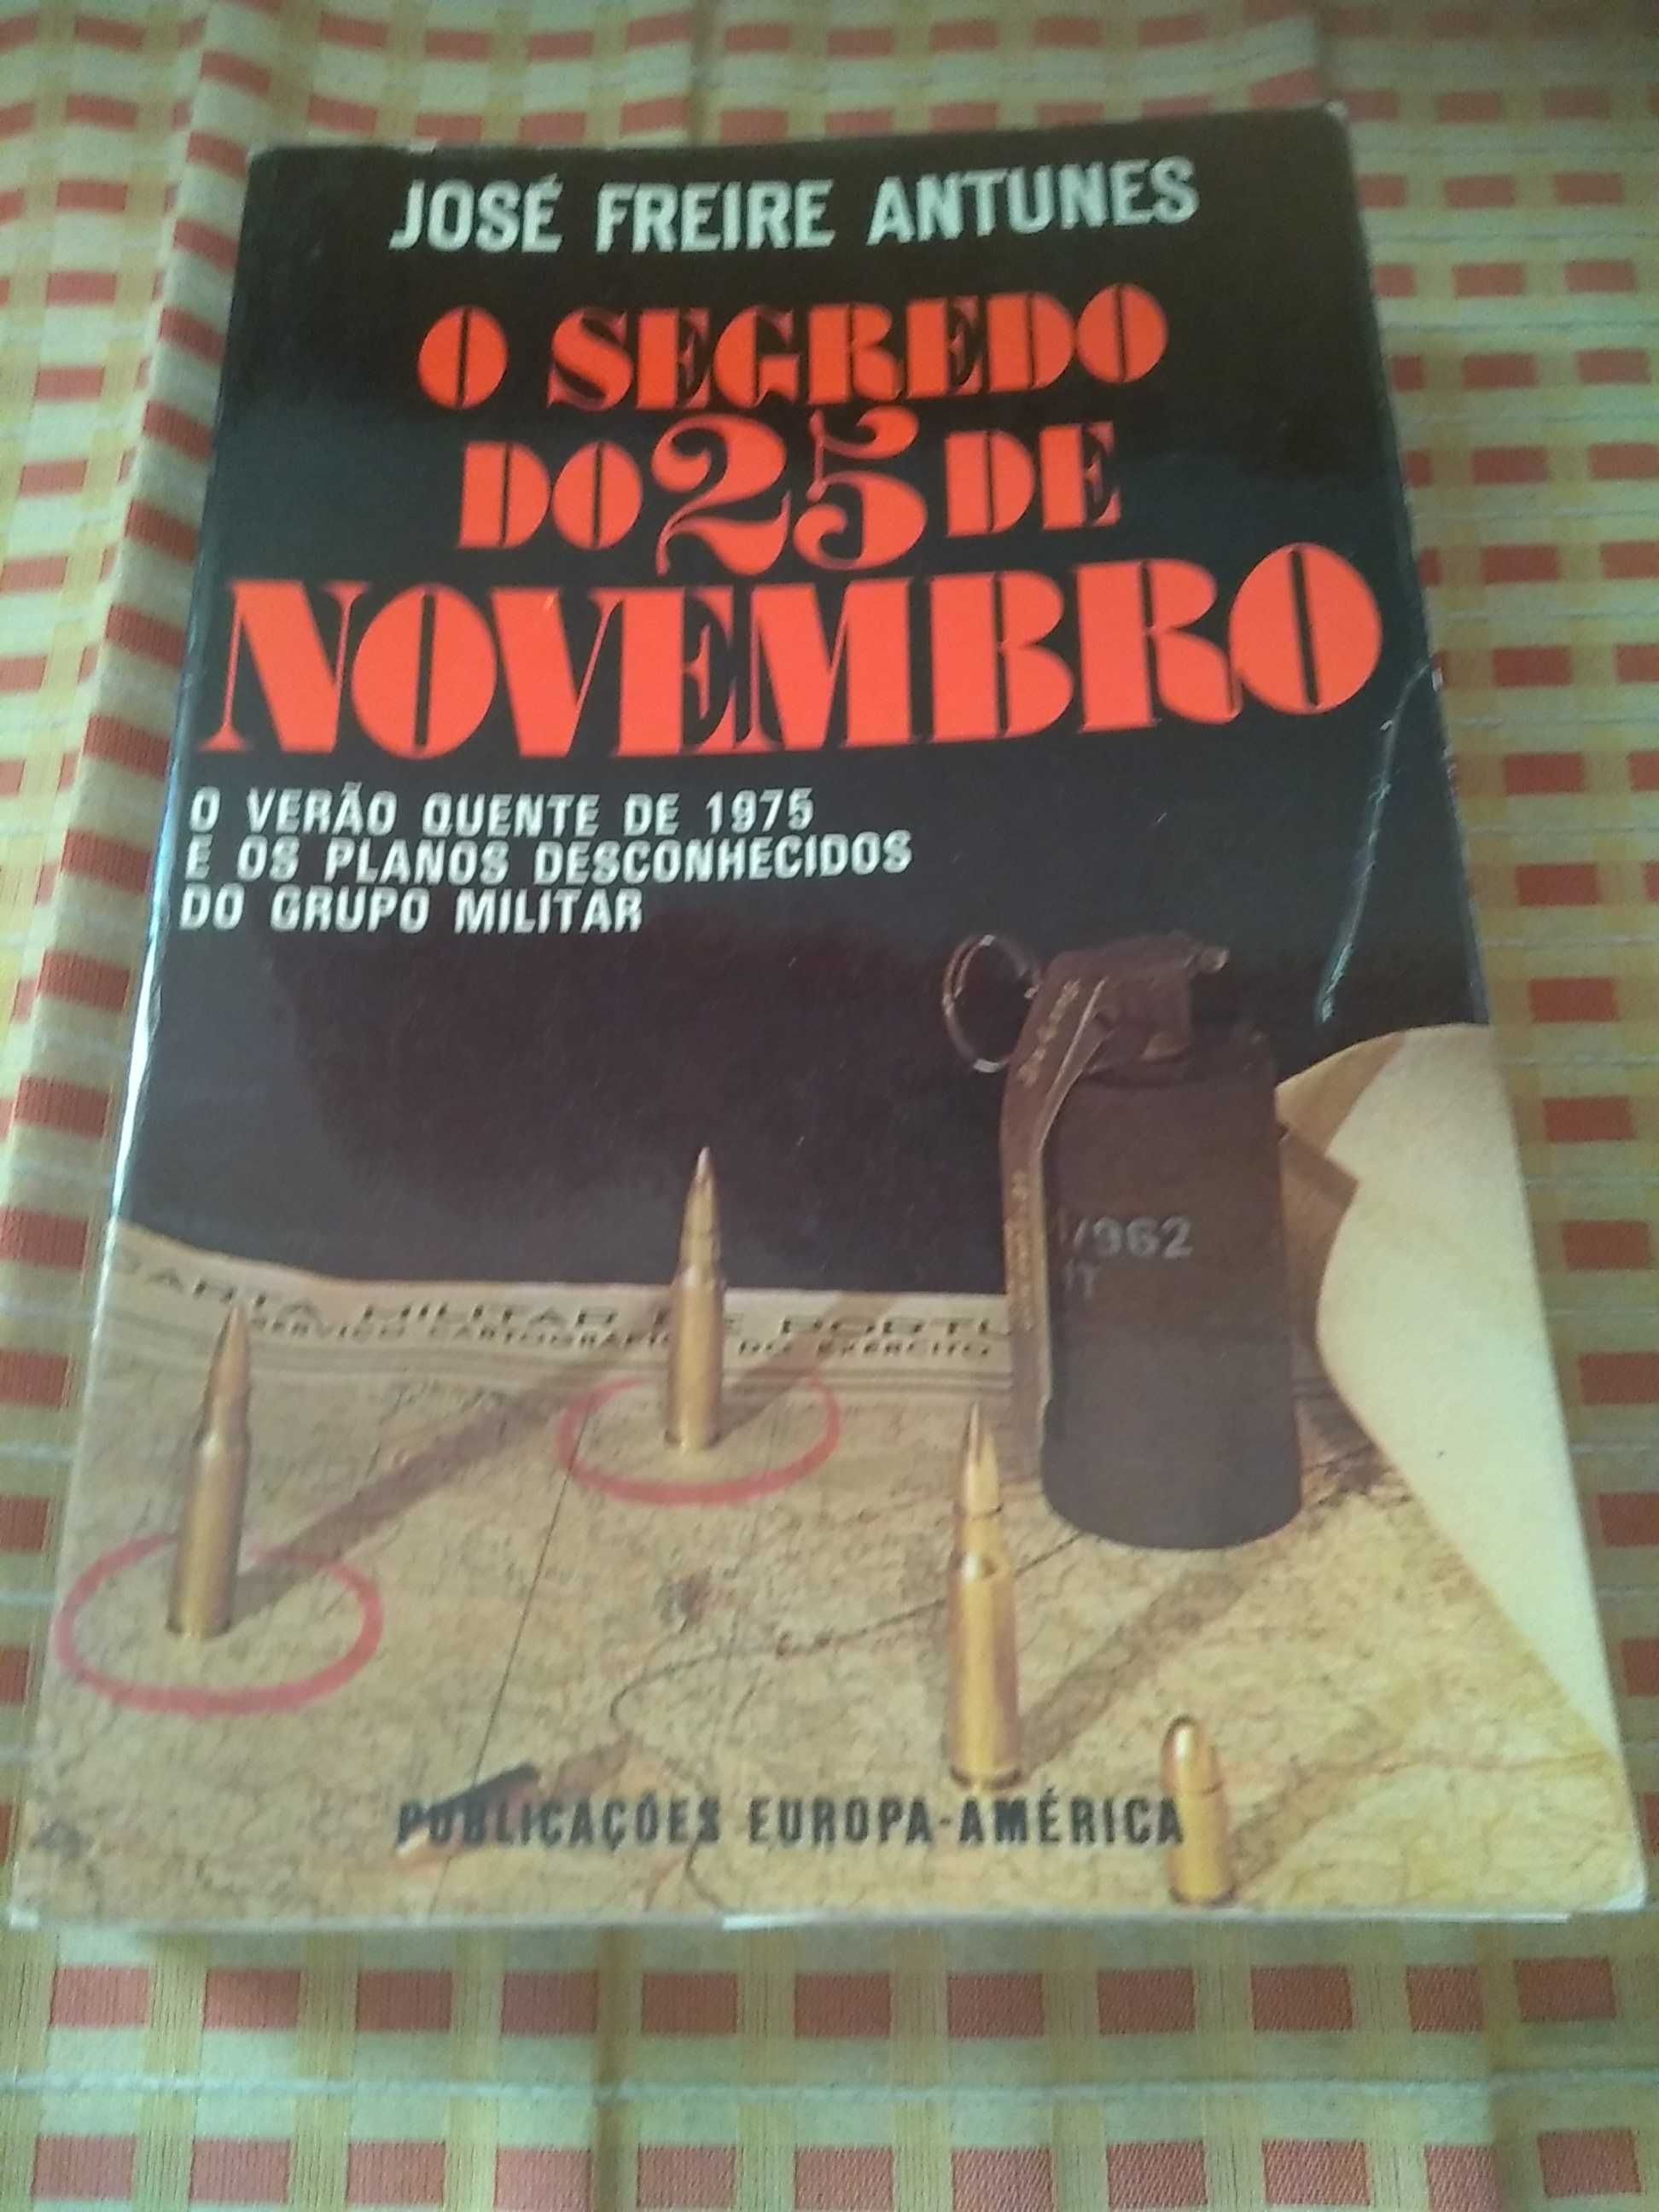 José Freire Antunes - O segredo do 25 de Novembro